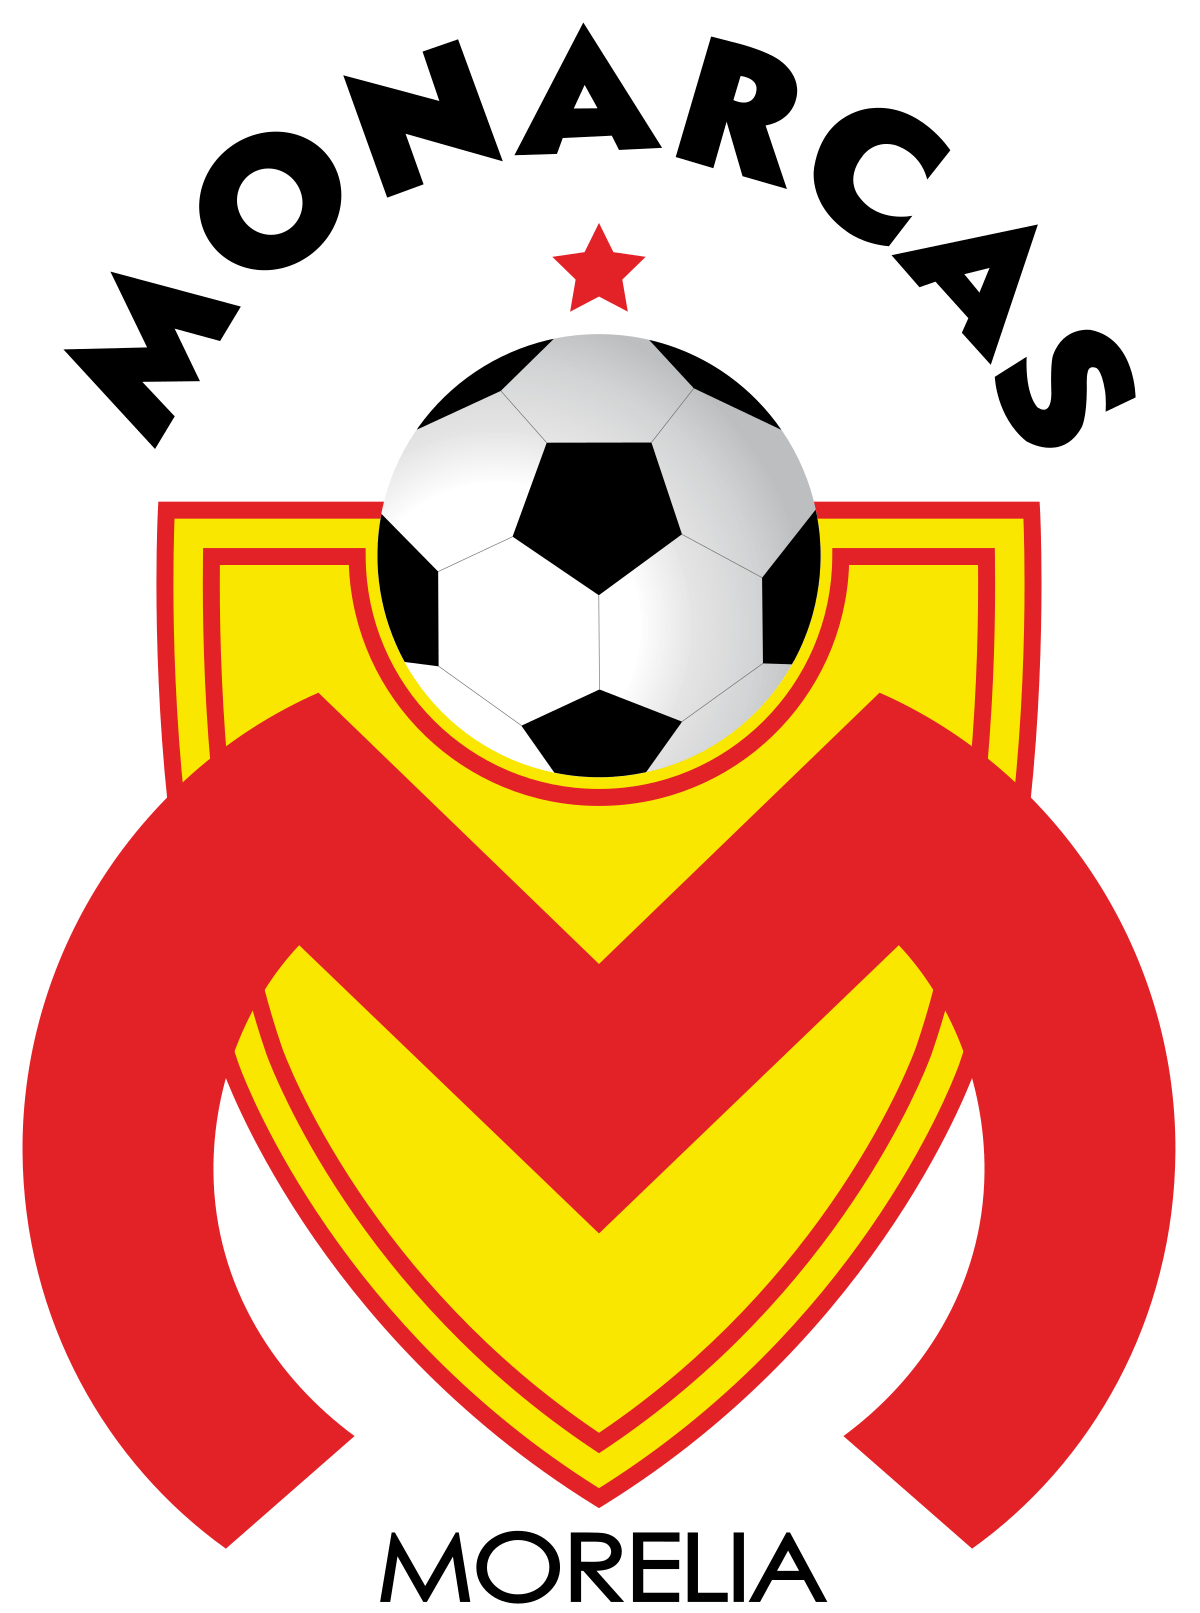 Soccer.com Logo - WeGotSoccer.com. Soccer Shoes, Equipment and Apparel